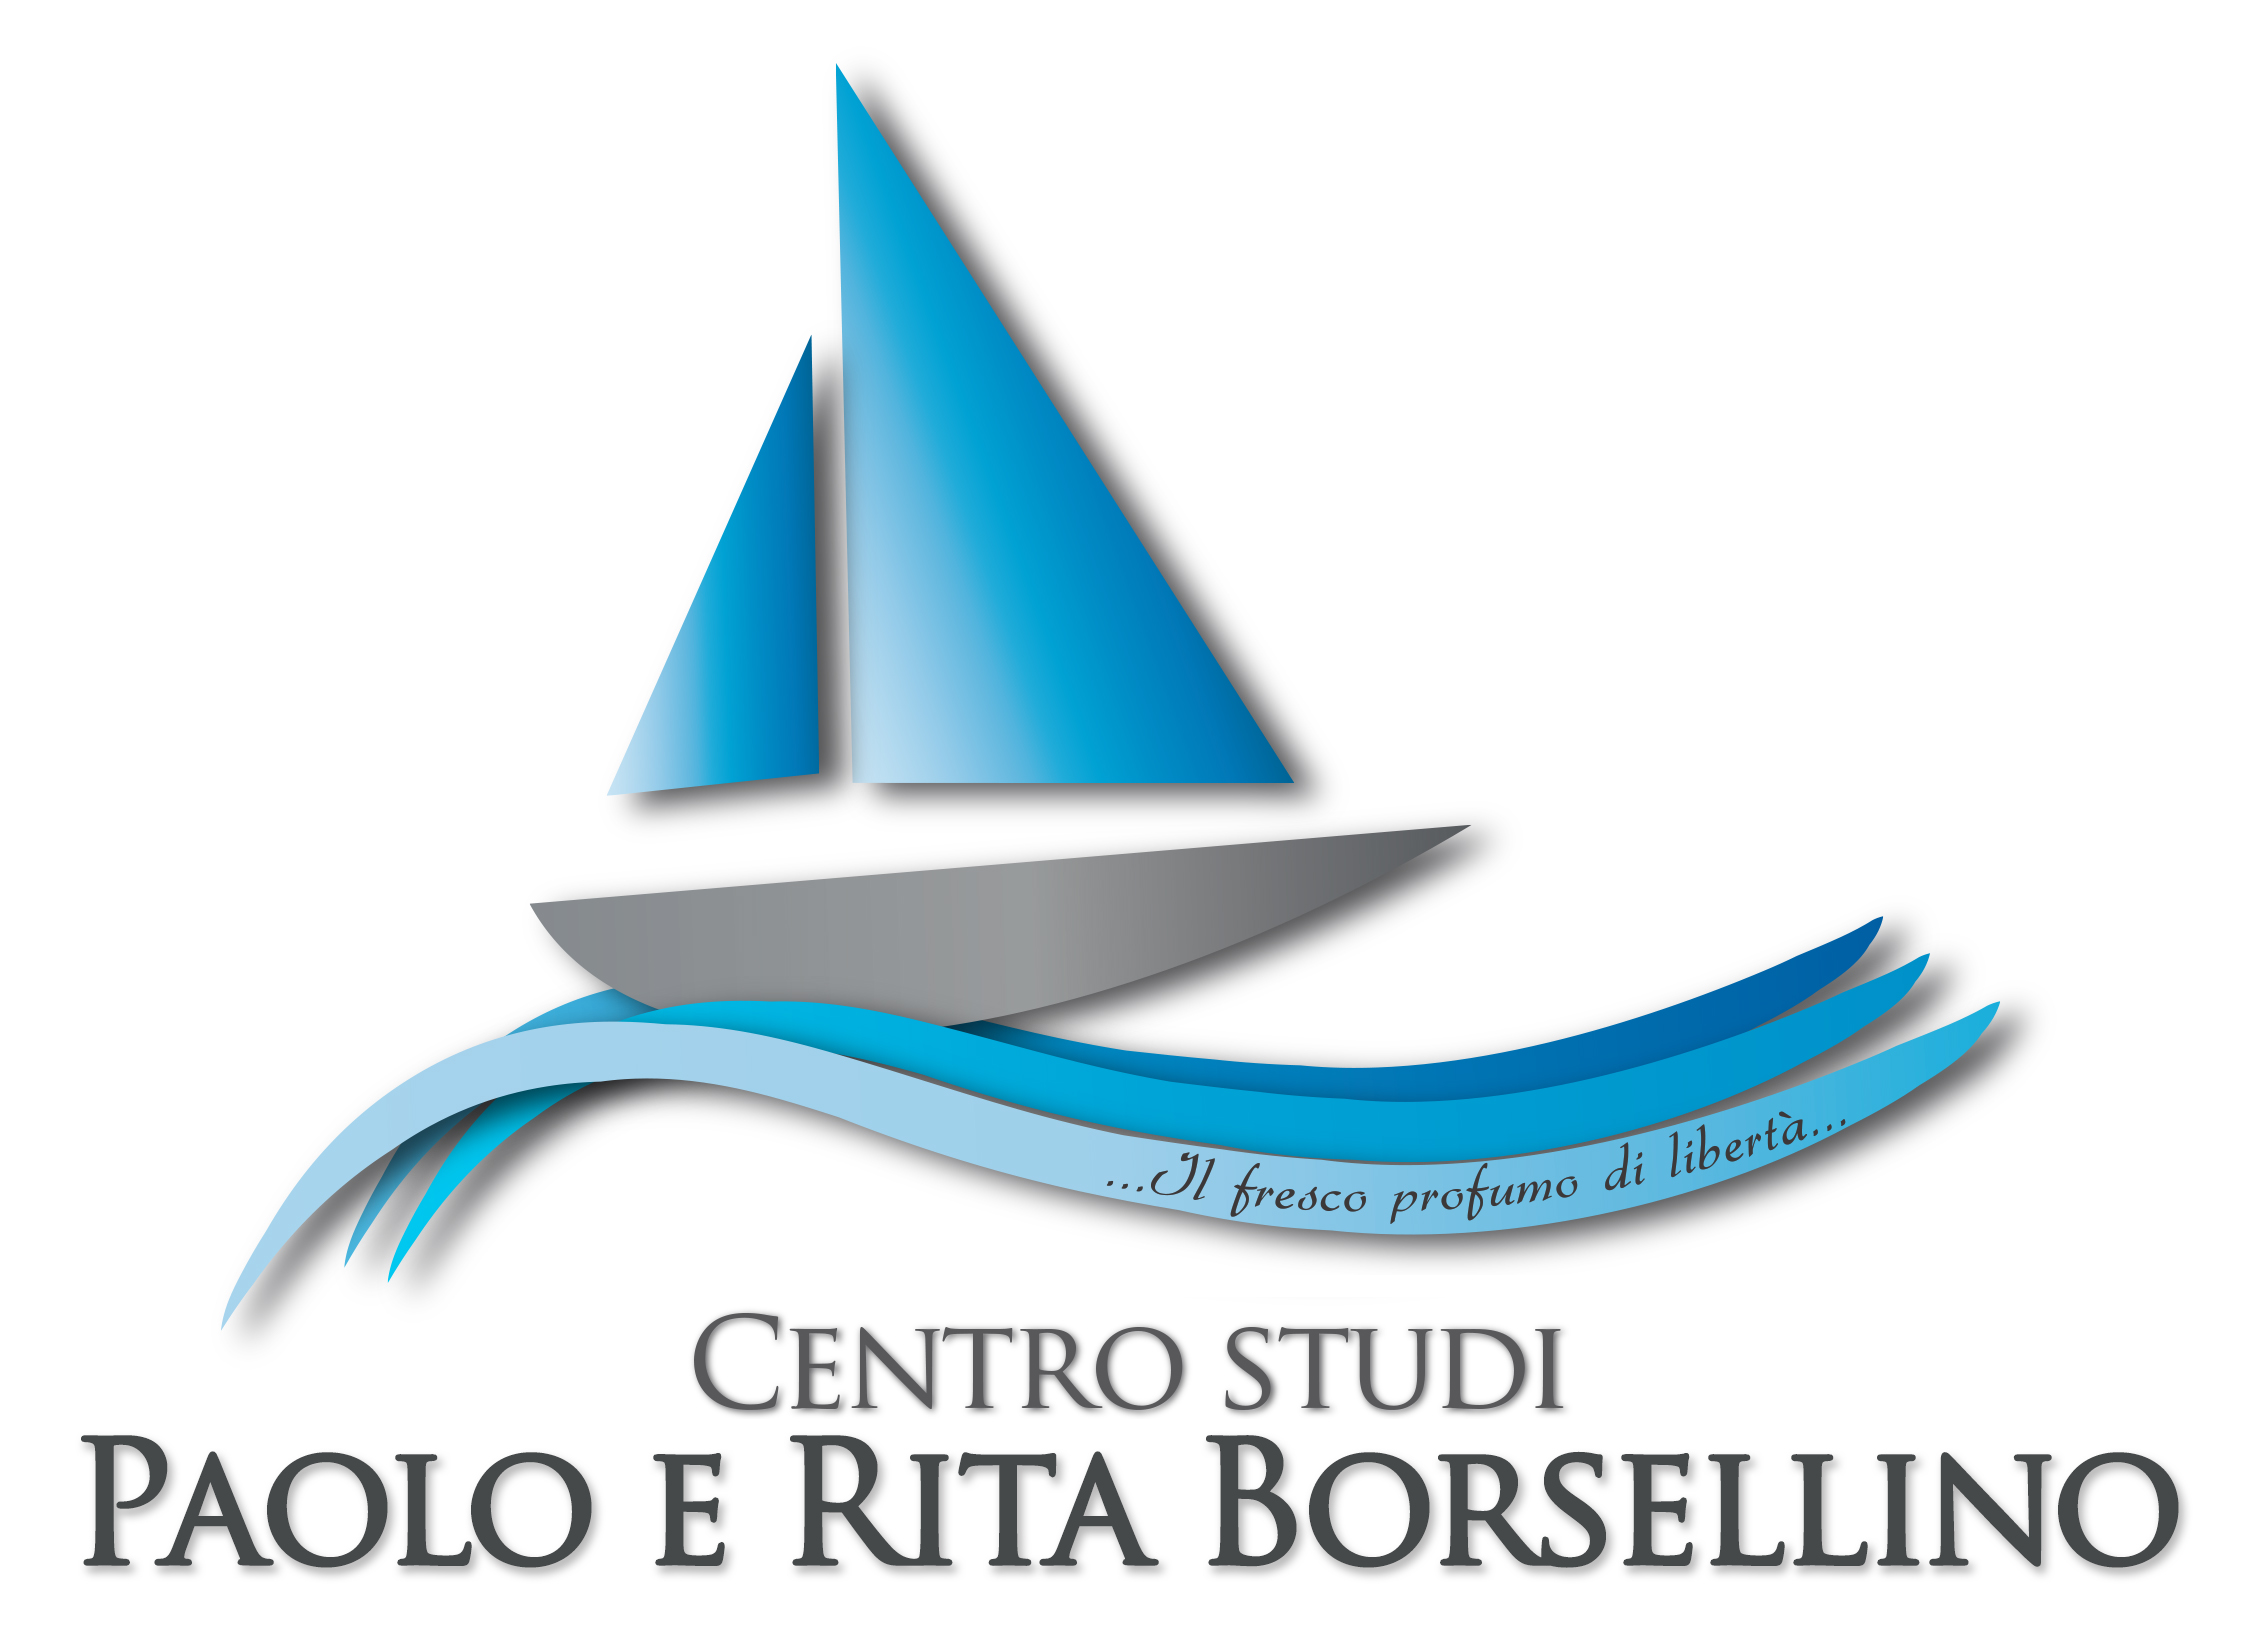 Centro Studi Paolo e Rita Borsellino